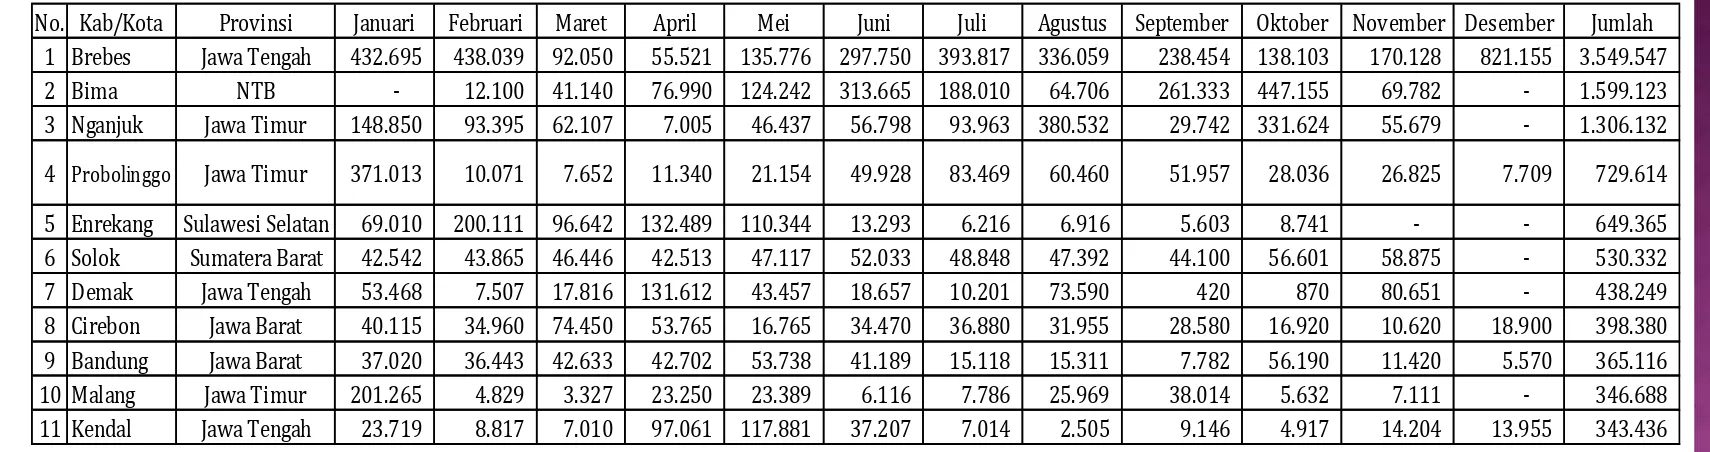 Tabel Data Hasil Produksi/Panen Sebelas Besar Sentra Bawang Merah di Indonesia pada Tahun 2016 